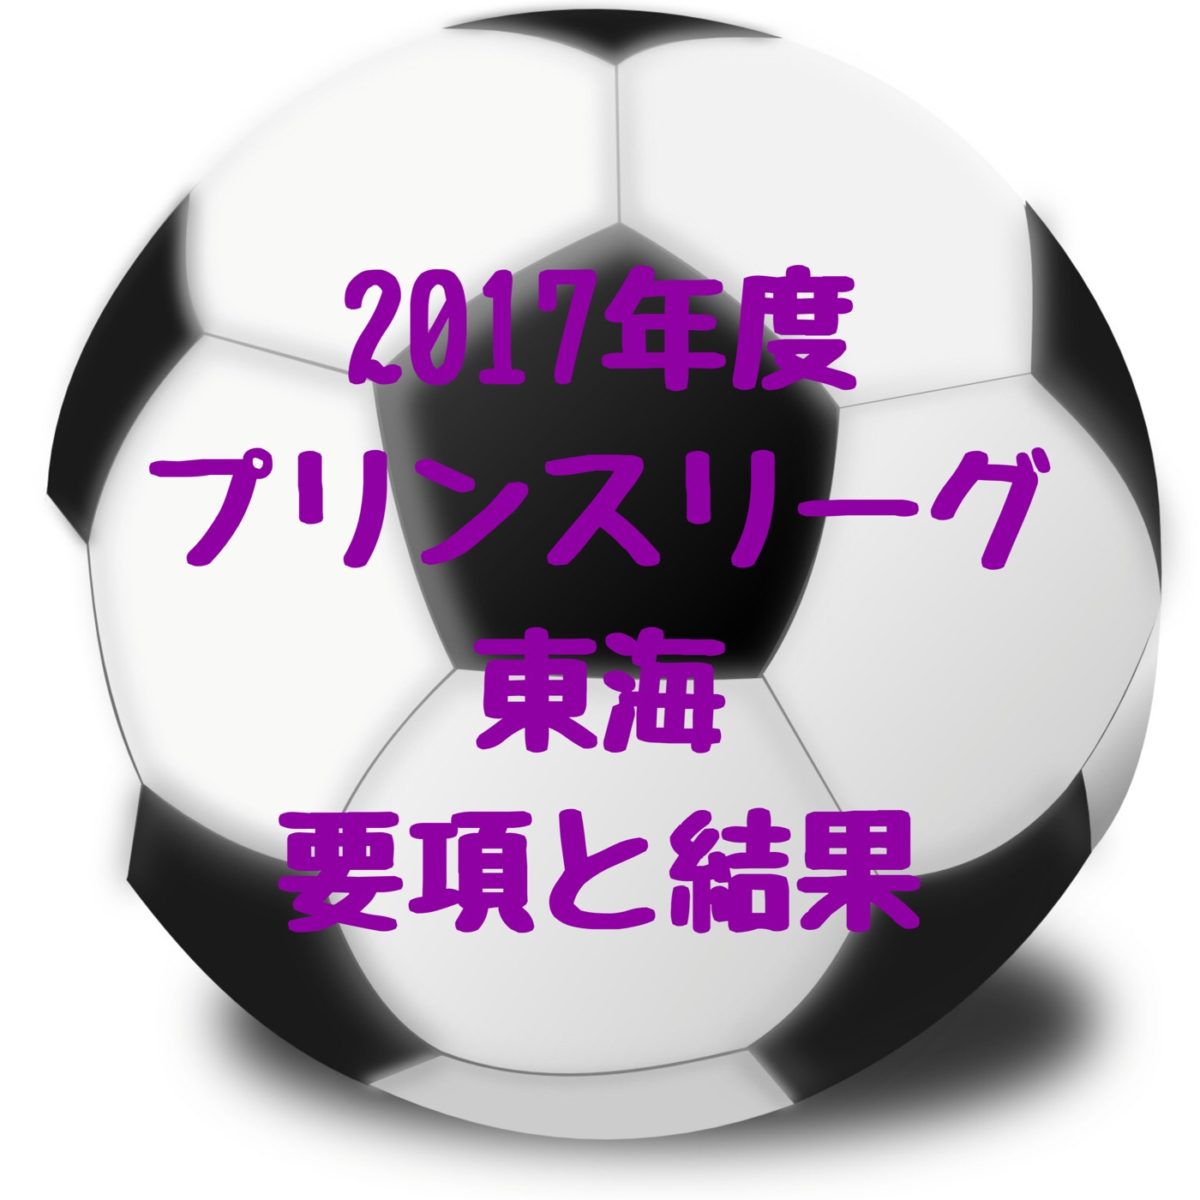 プリンスリーグ東海17高円宮杯 Jfa U 18 サッカー 要項と最終順位表